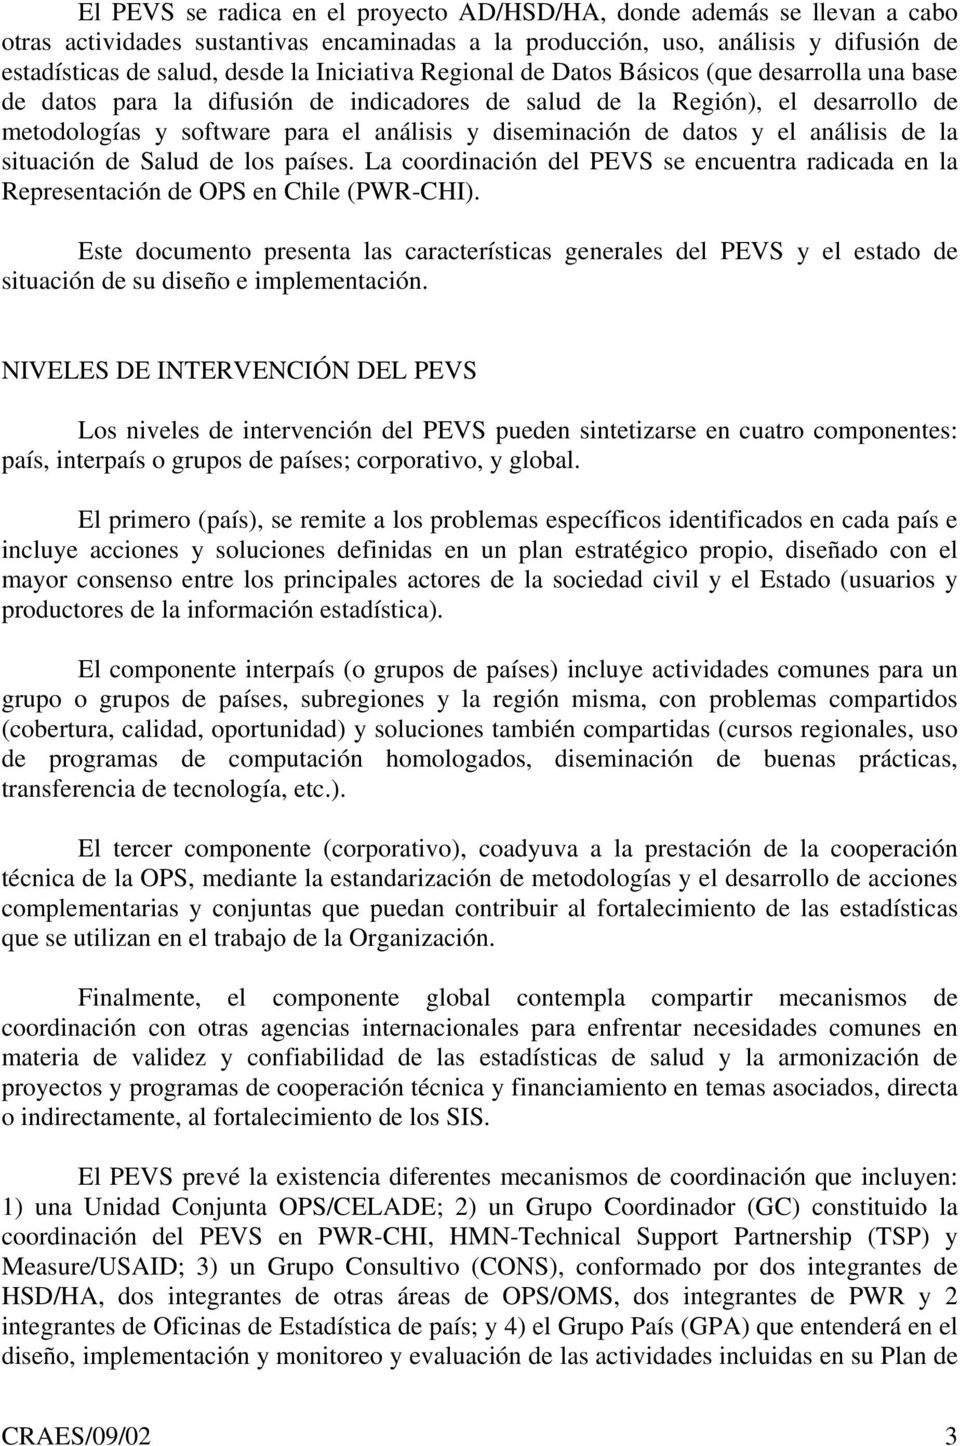 de datos y el análisis de la situación de Salud de los países. La coordinación del PEVS se encuentra radicada en la Representación de OPS en Chile (PWR-CHI).